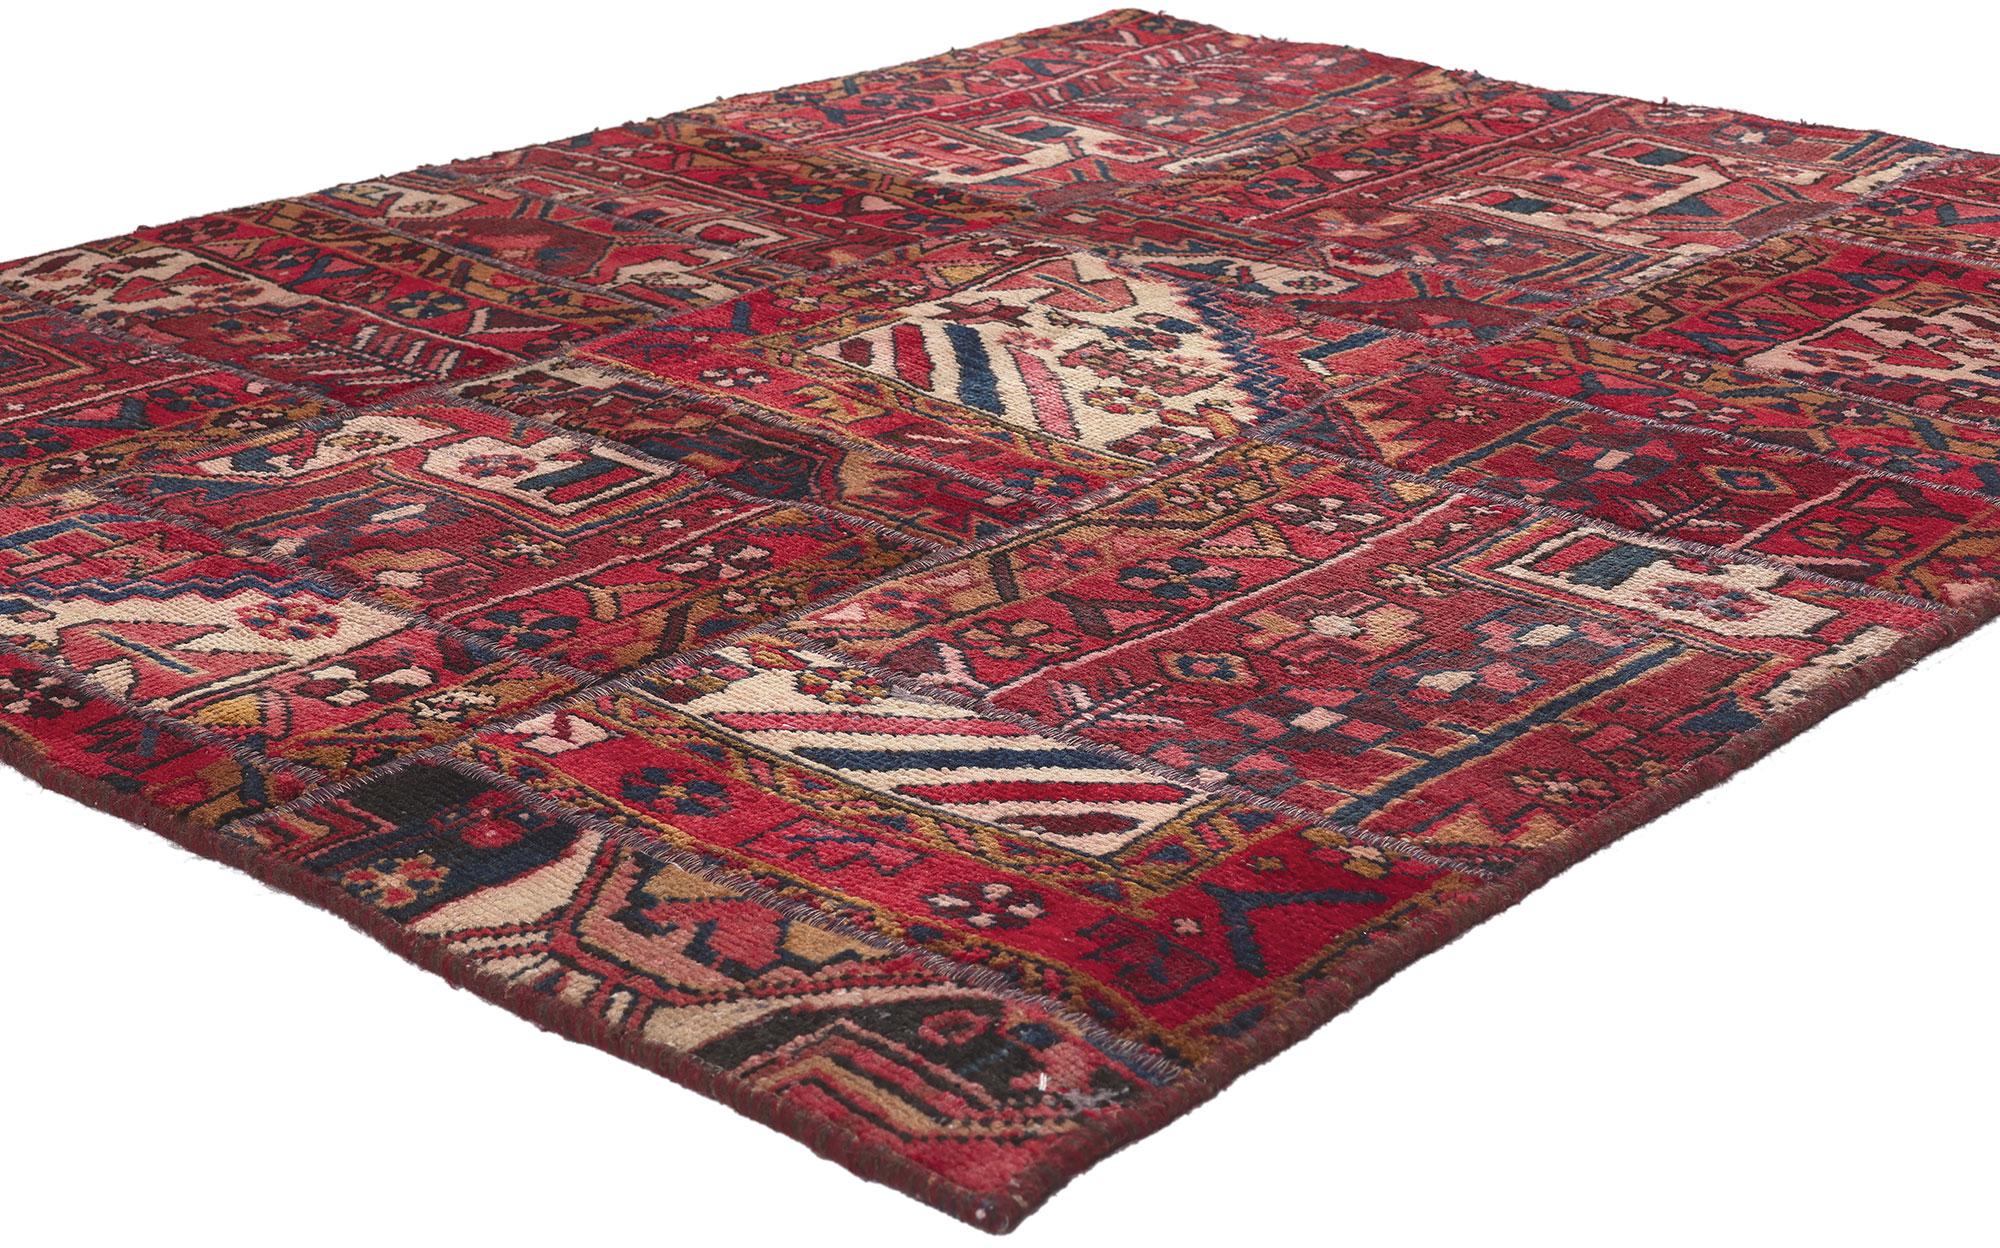 78578 Tapis vintage persan en patchwork, 04'03 x 05'04. 
Emanant d'un charme bucolique et d'une sensibilité traditionnelle, ce tapis patchwork persan vintage est une vision captivante de la beauté tissée. Les motifs de ByTradition et la palette de